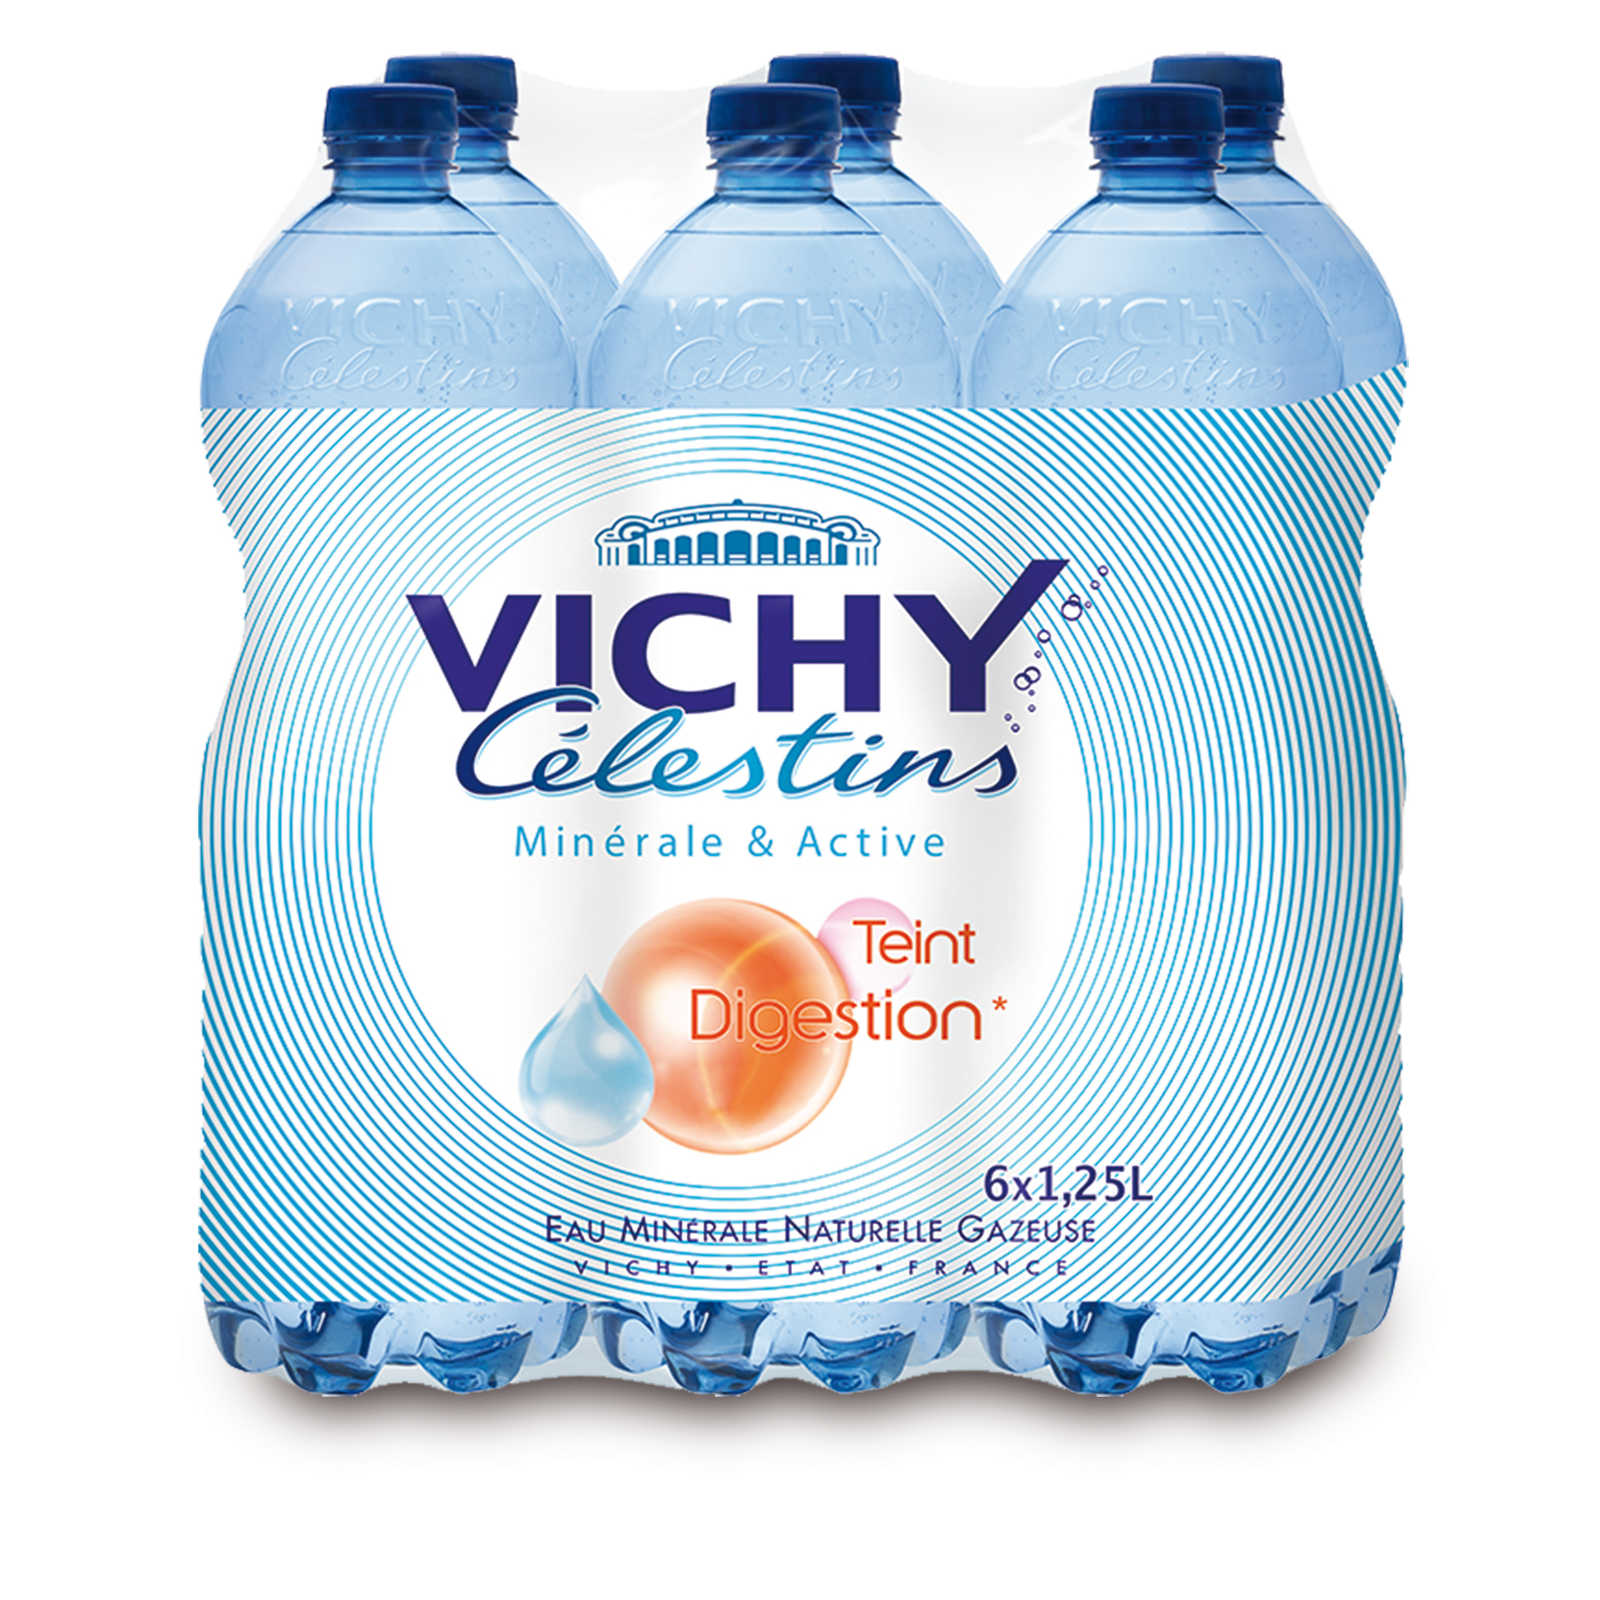 Vichy Célestins